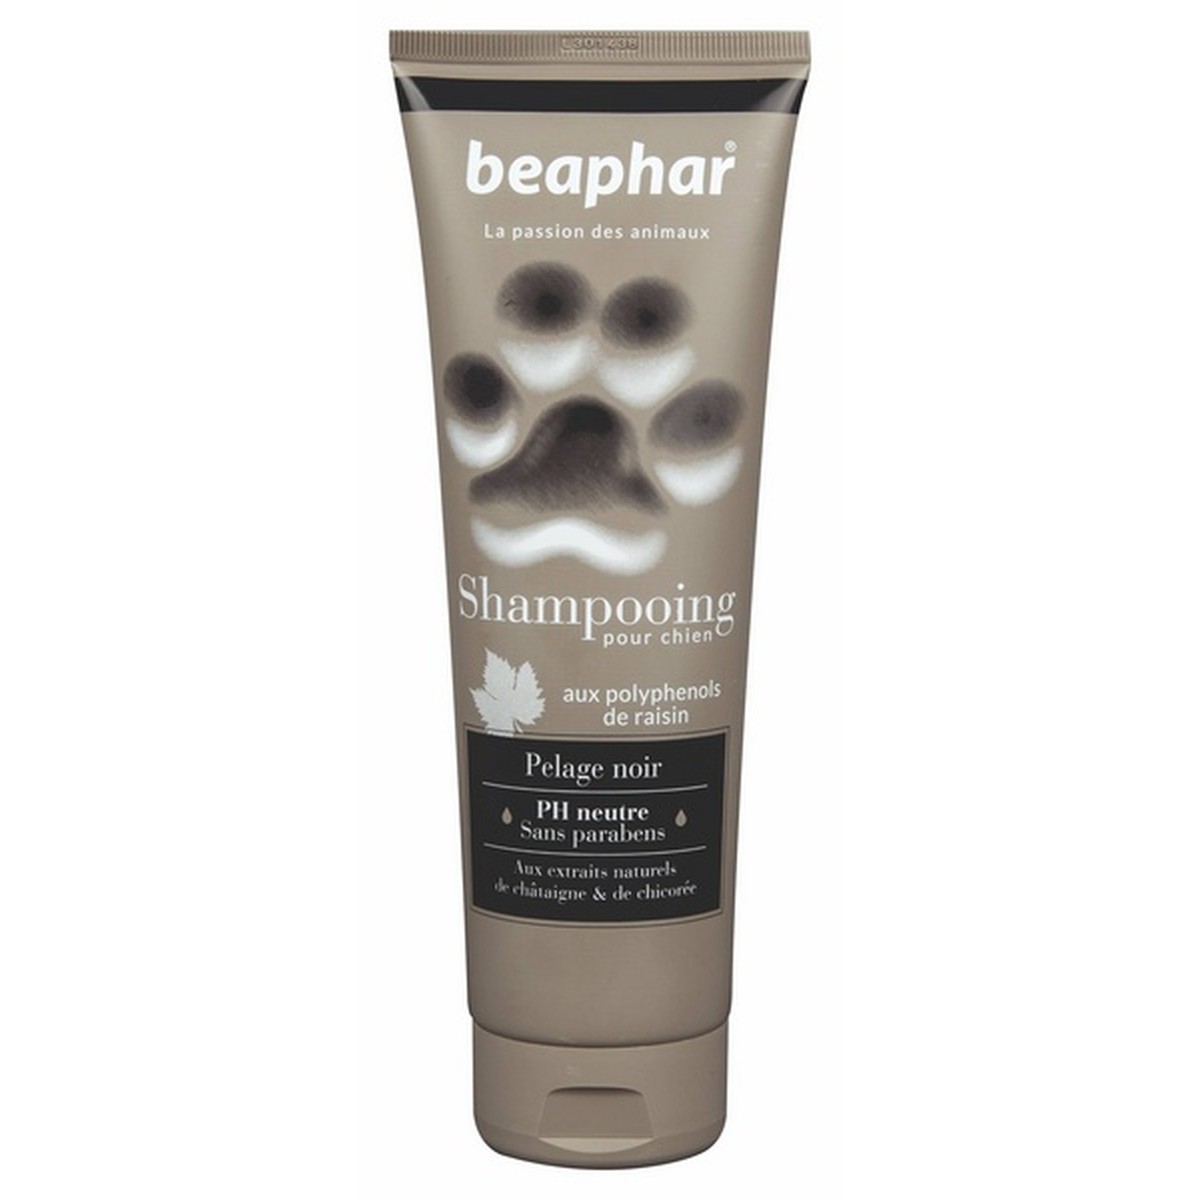   Beaphar Shampooing Pelage Noir 250 ml  250ml